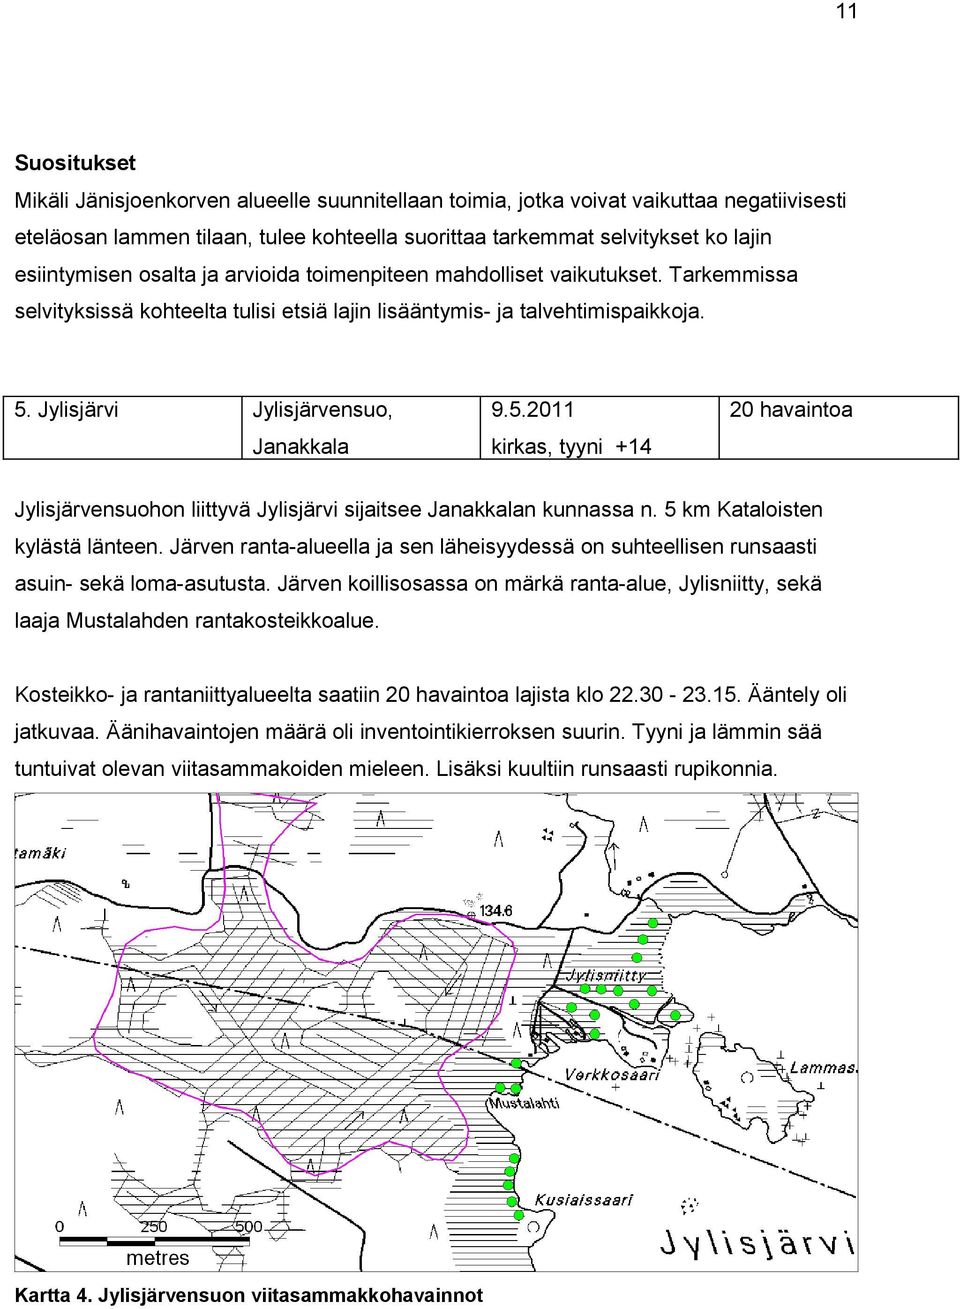 Jylisjärvi Jylisjärvensuo, 9.5.2011 Janakkala kirkas, tyyni +14 20 havaintoa Jylisjärvensuohon liittyvä Jylisjärvi sijaitsee Janakkalan kunnassa n. 5 km Kataloisten kylästä länteen.